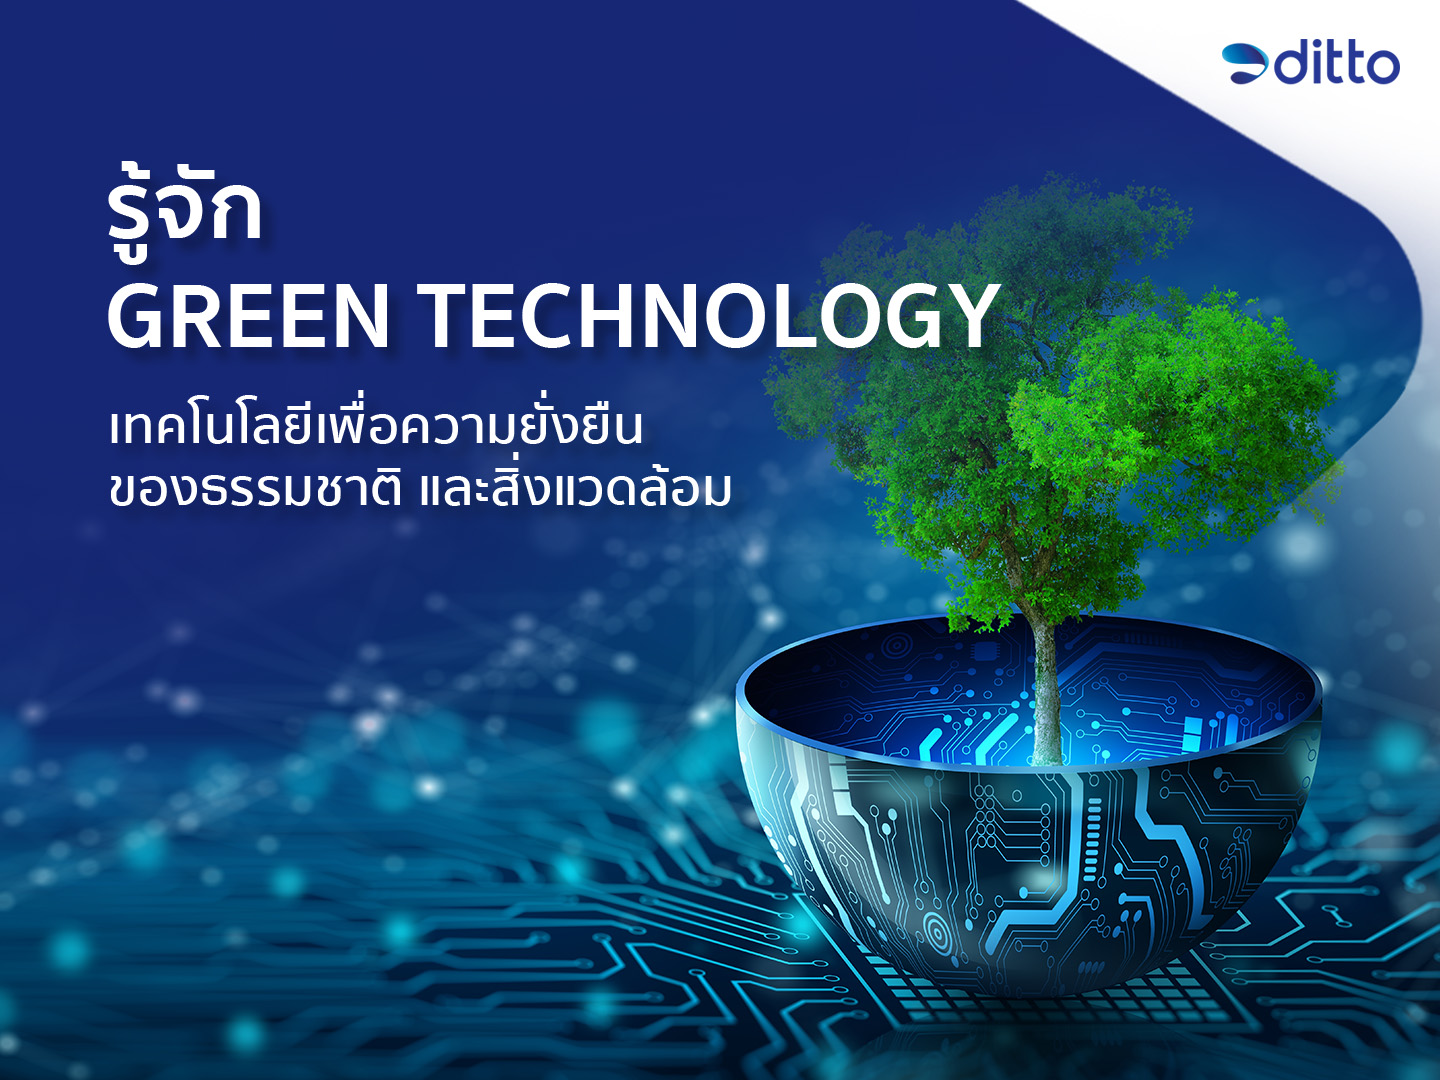 รู้จัก Green Technology เทคโนโลยีเพื่อความยั่งยืนของธรรมชาติ และสิ่งแวดล้อม